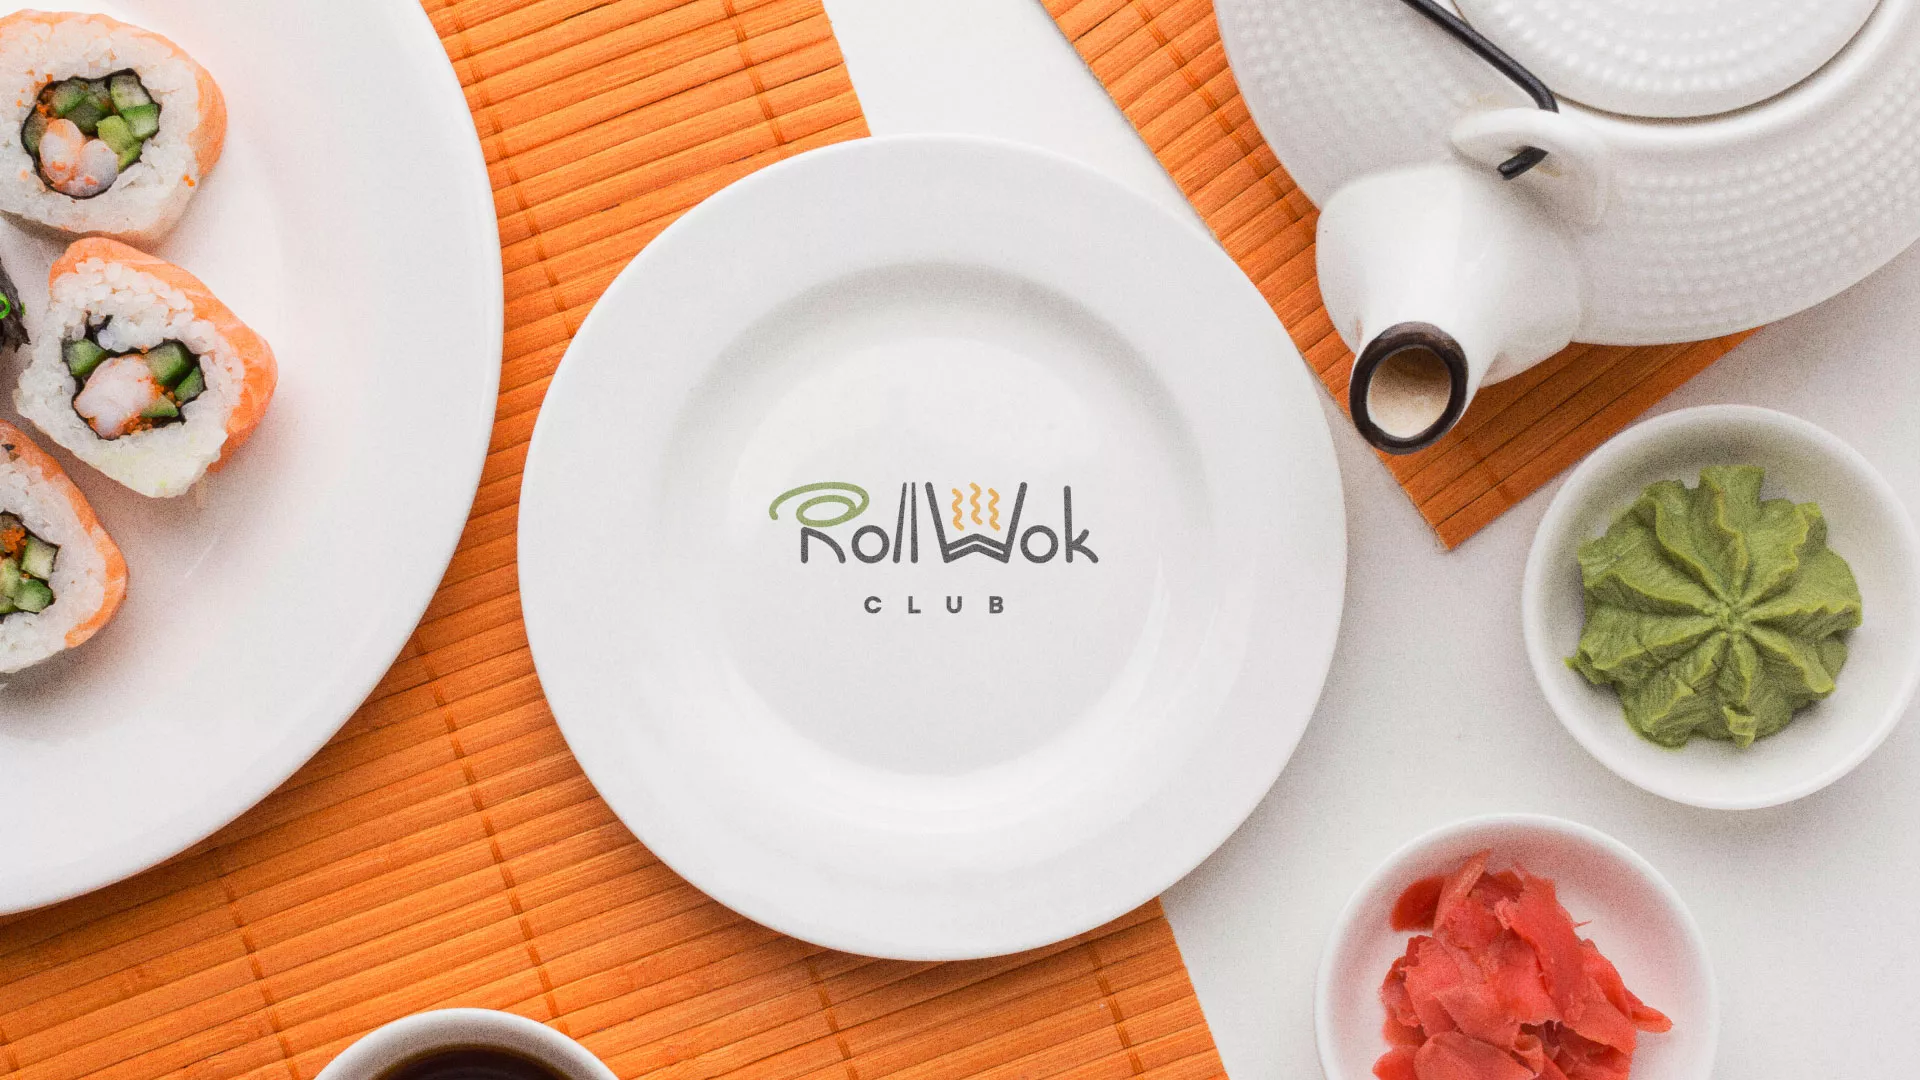 Разработка логотипа и фирменного стиля суши-бара «Roll Wok Club» в Биробиджане